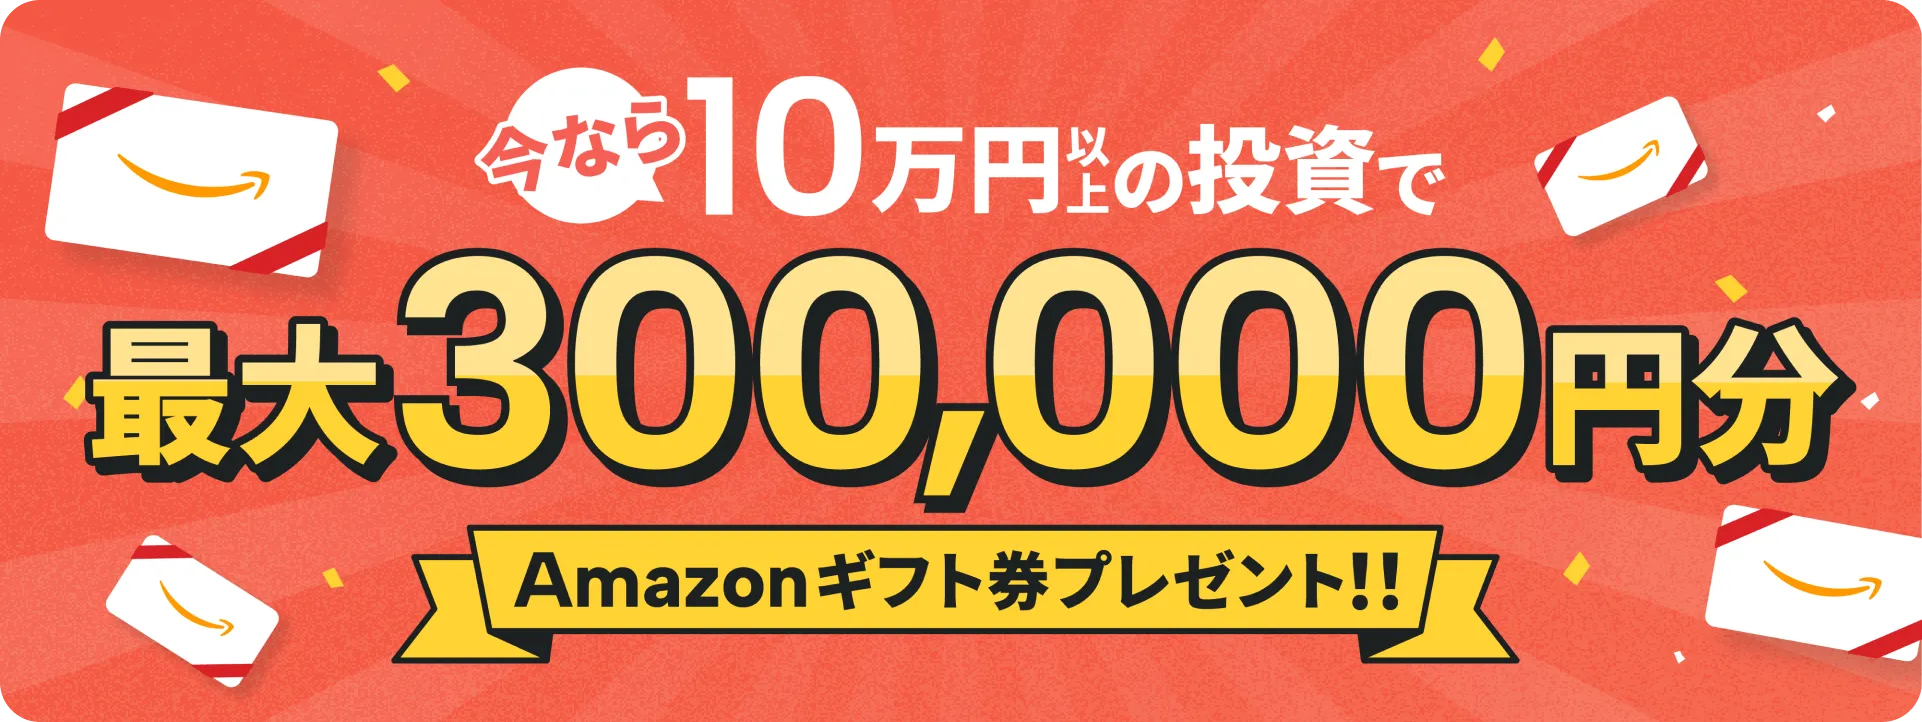 今なら10万円以上の投資で最大300,000円分Amazonギフト券プレゼント!!